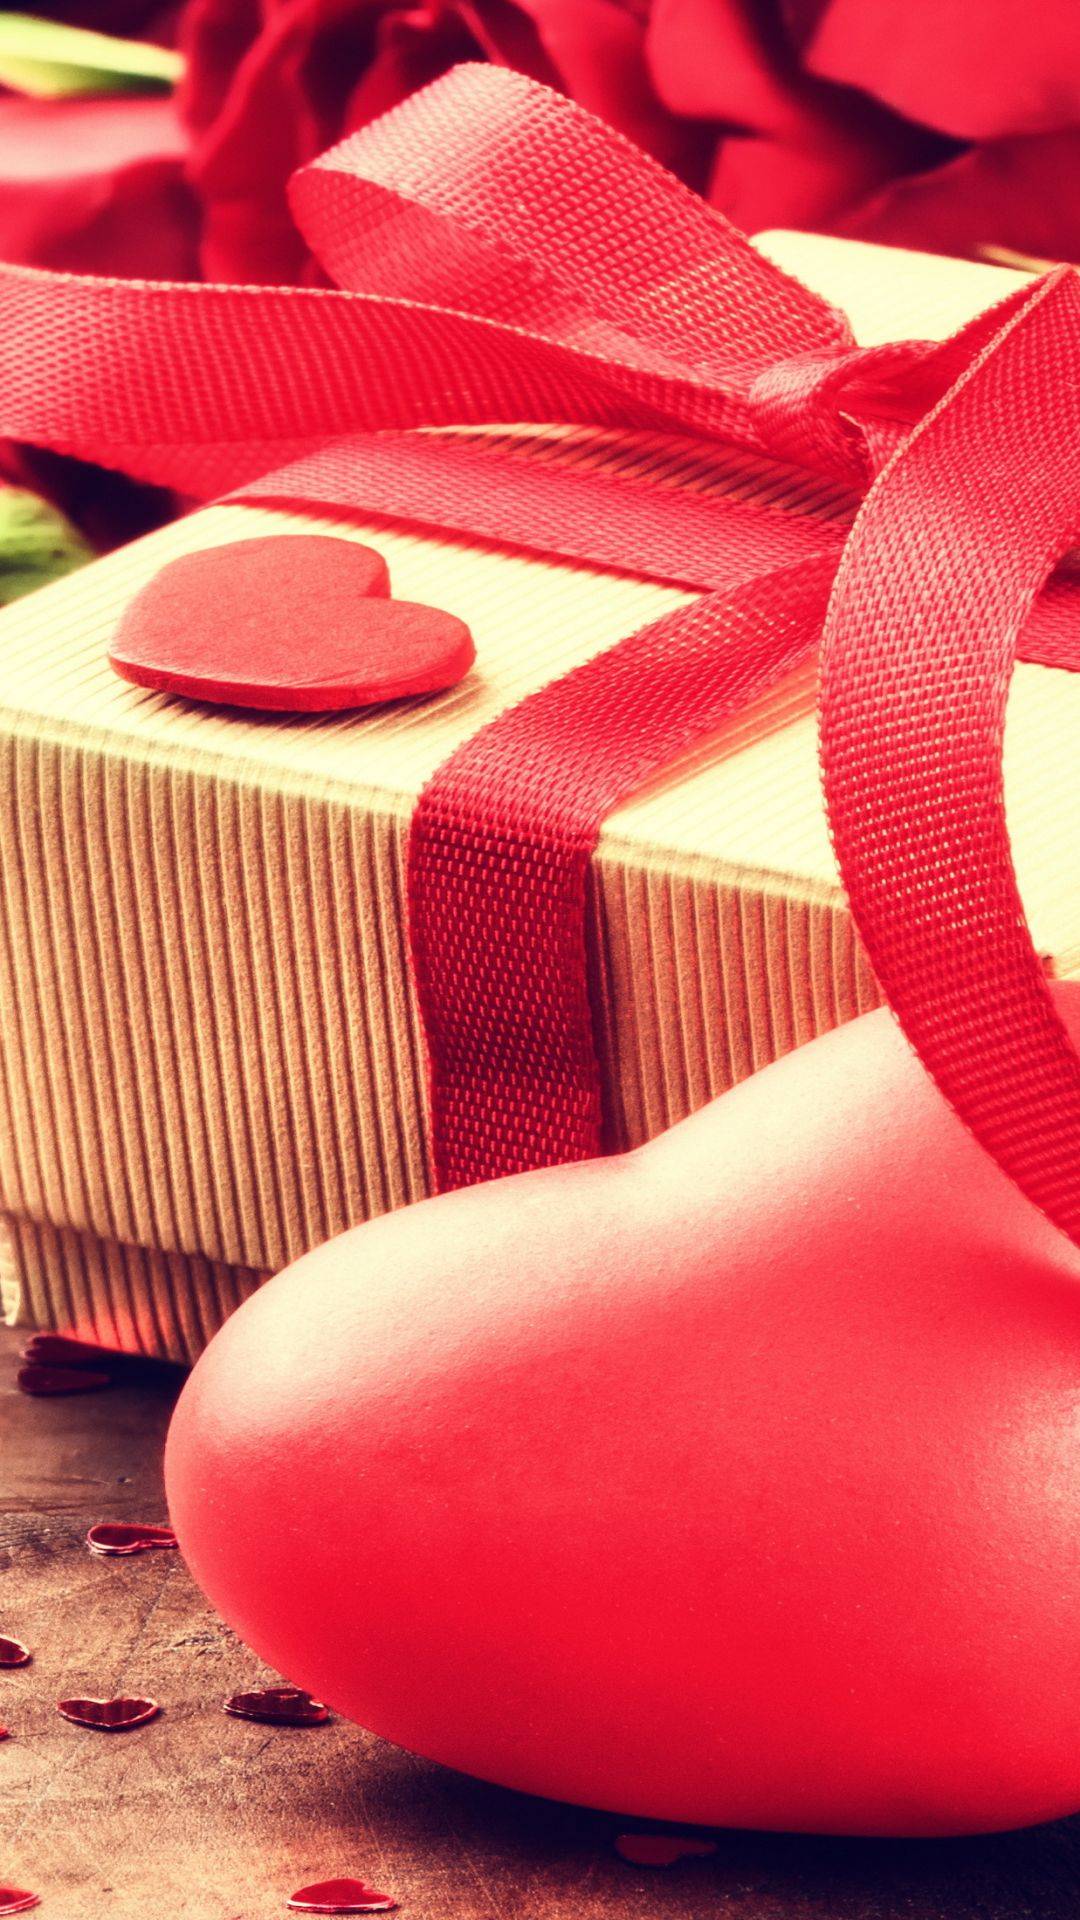 Как подарить особенный подарок на день святого валентина, который выразит ваши чувства